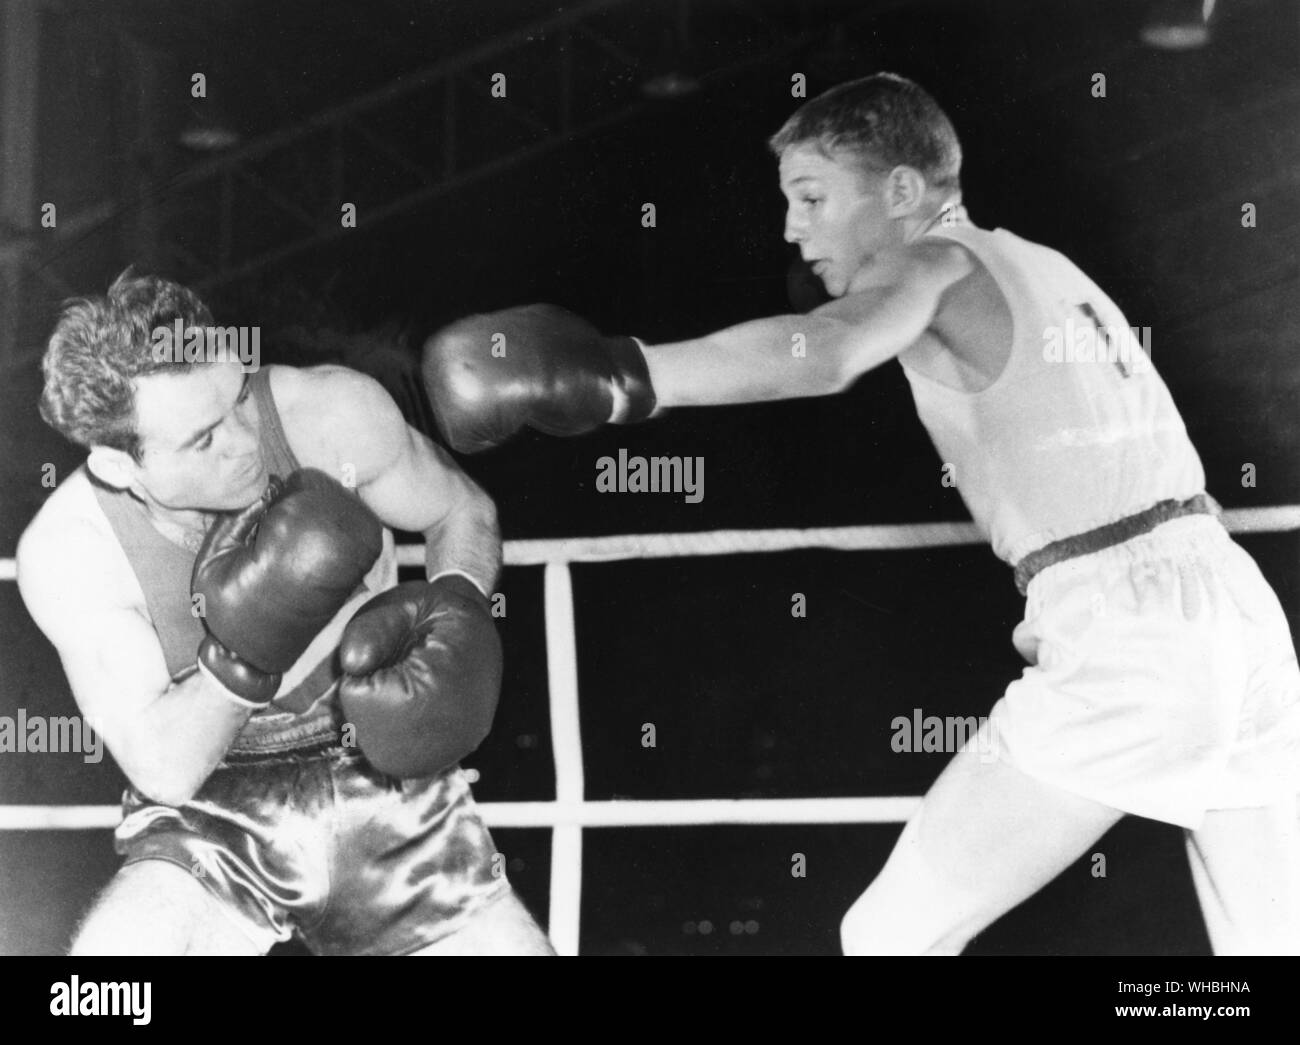 Aus., Melbourne, Olimpiadi, 1956: Terry Spinks, 18 anni londinese, conduce con una sinistra a Mircea Dobrescu della Romania durante il loro peso mosca finale. Spinks ha vinto la medaglia d'oro. Foto Stock